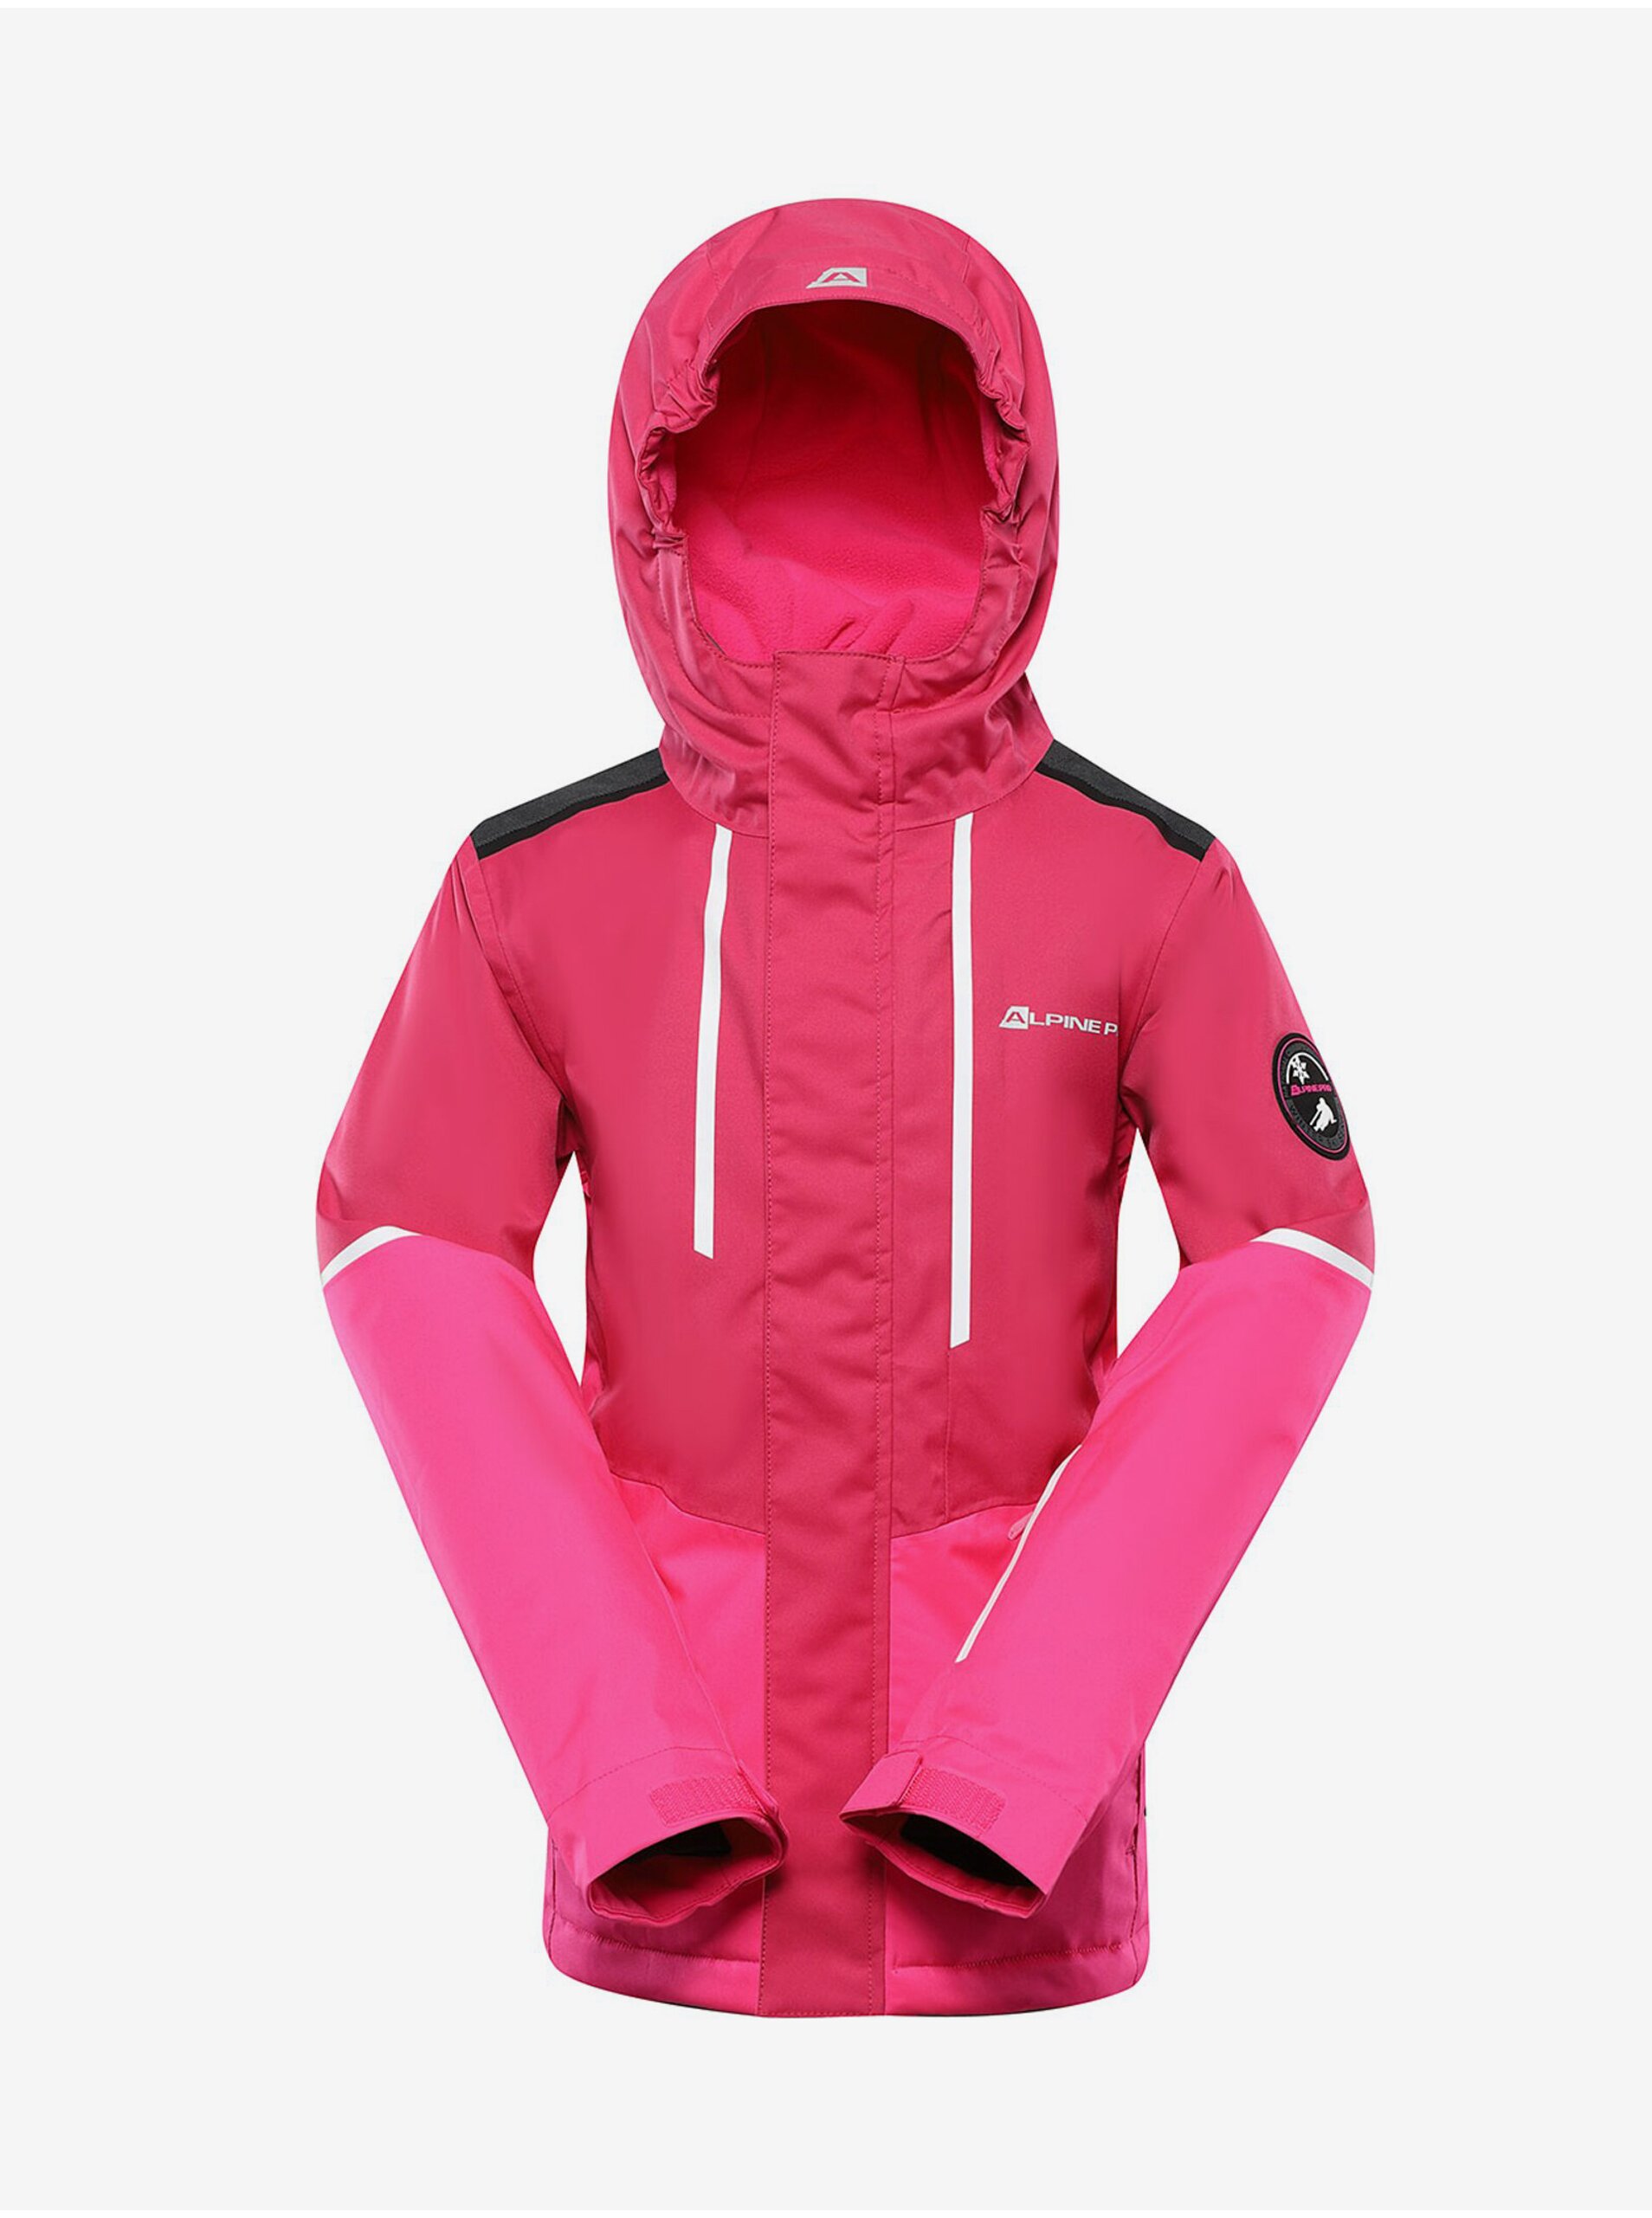 E-shop Tmavě růžová holčičí lyžařská bunda s membránou PTX ALPINE PRO Zaribo